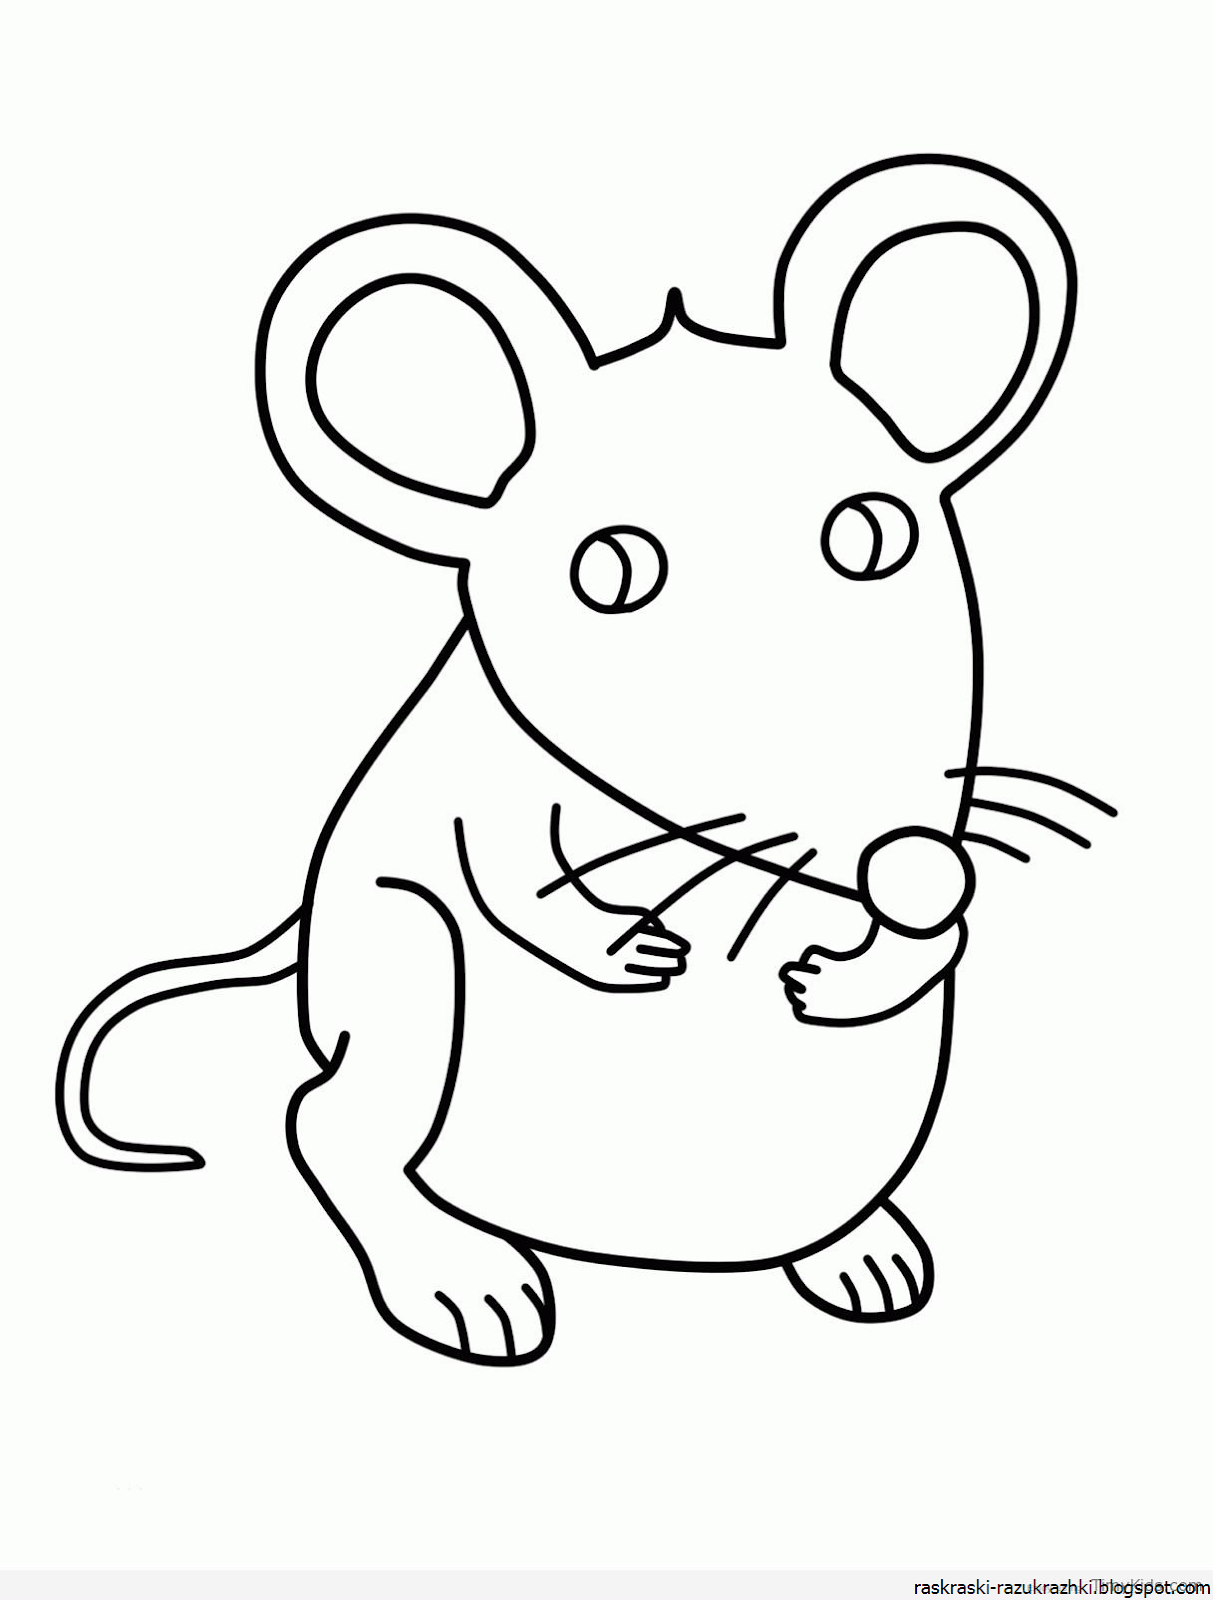 Раскраска мышь распечатать. Раскраска мышка. Раскраска мышонок. Мышка рисунок. Мышонок раскраска для детей.